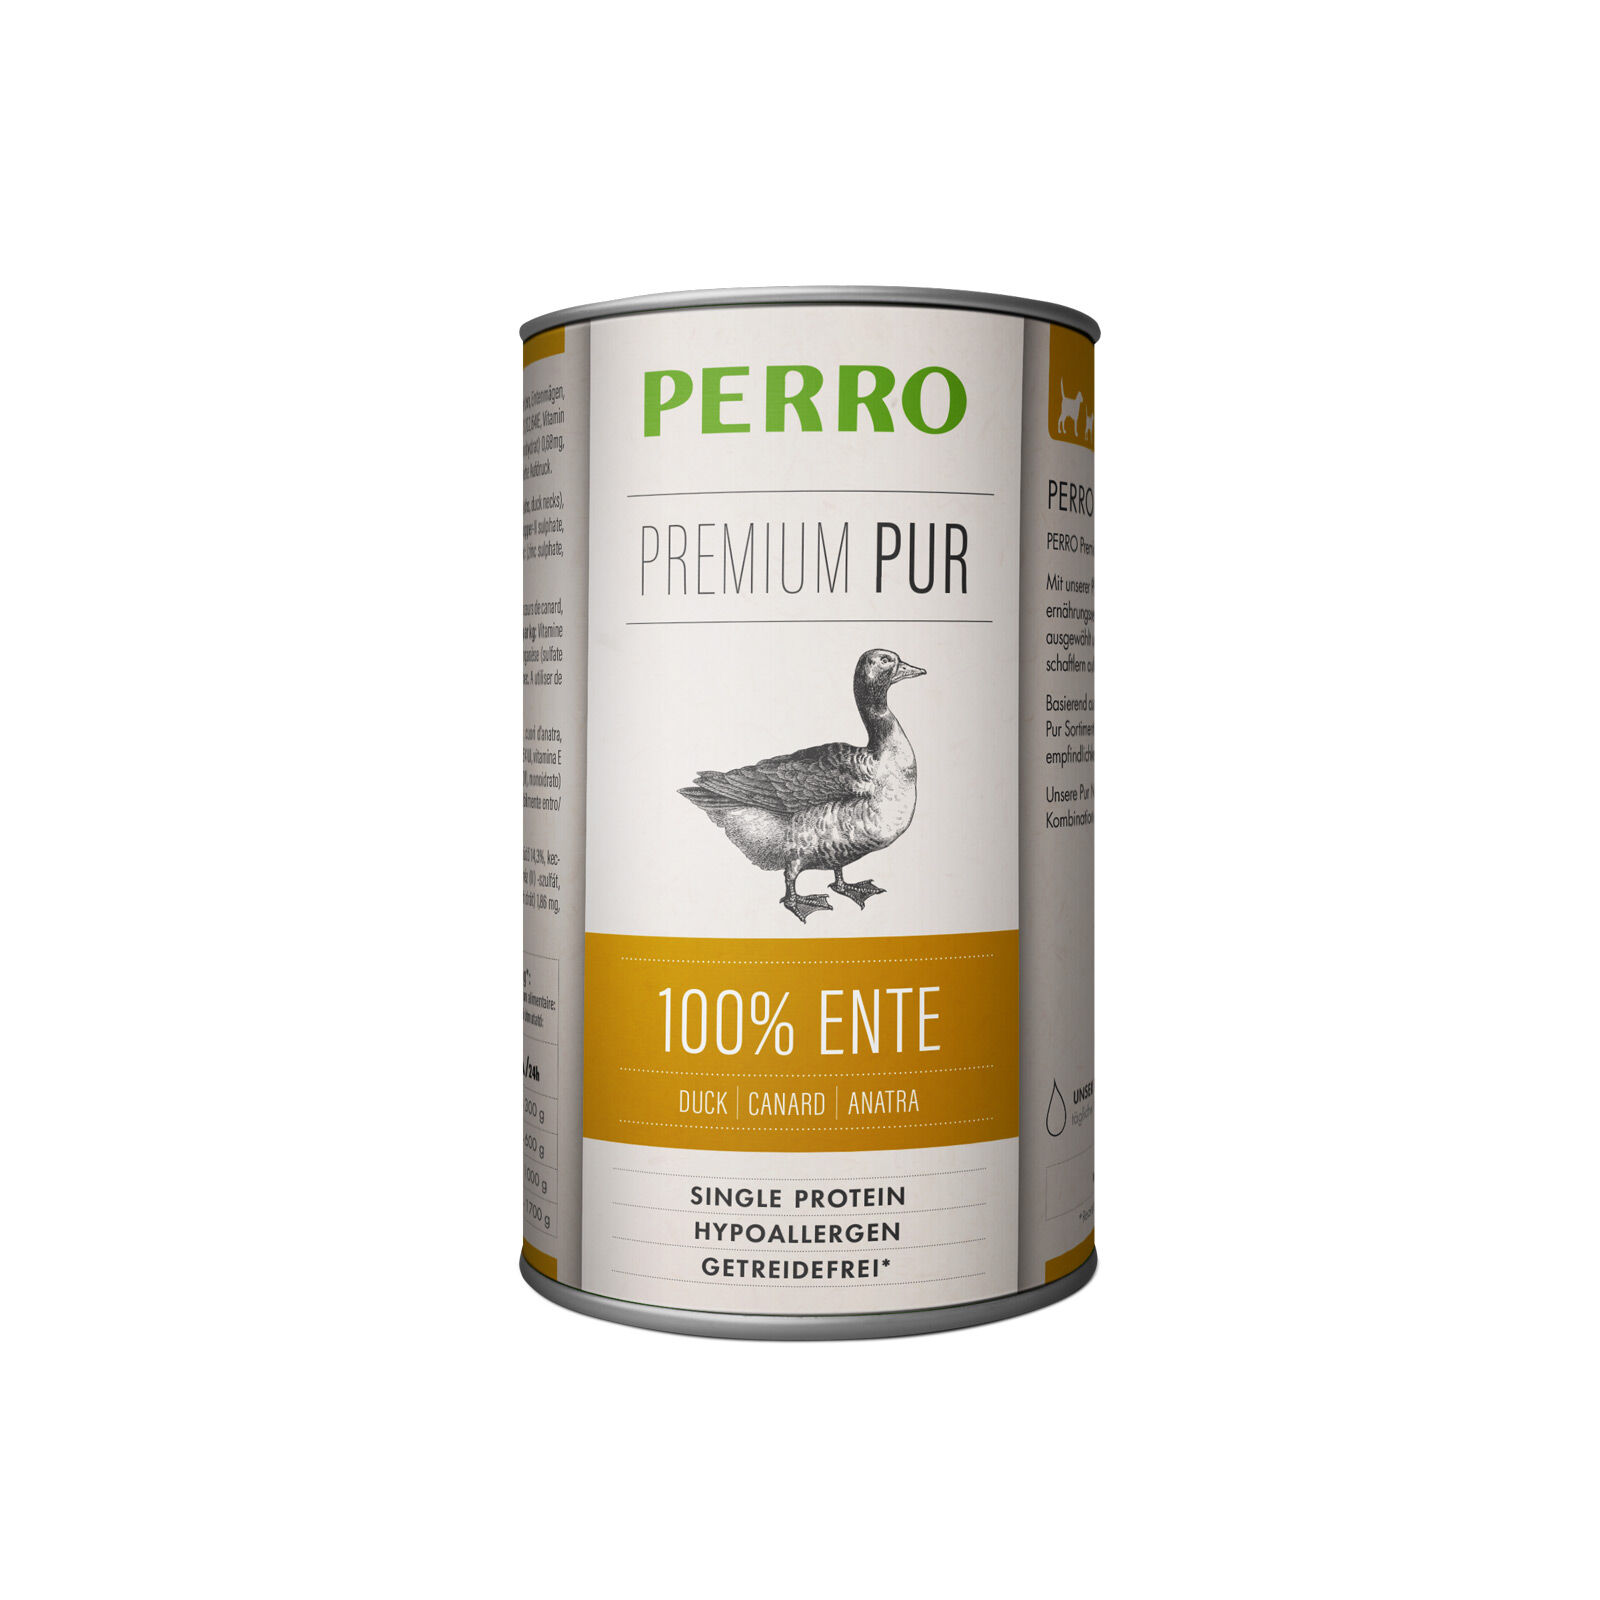 Perro-Premium-Pur-Ente-410g-getreidefreies-Singleprotein-Nassfutter-für-Hunde-181201